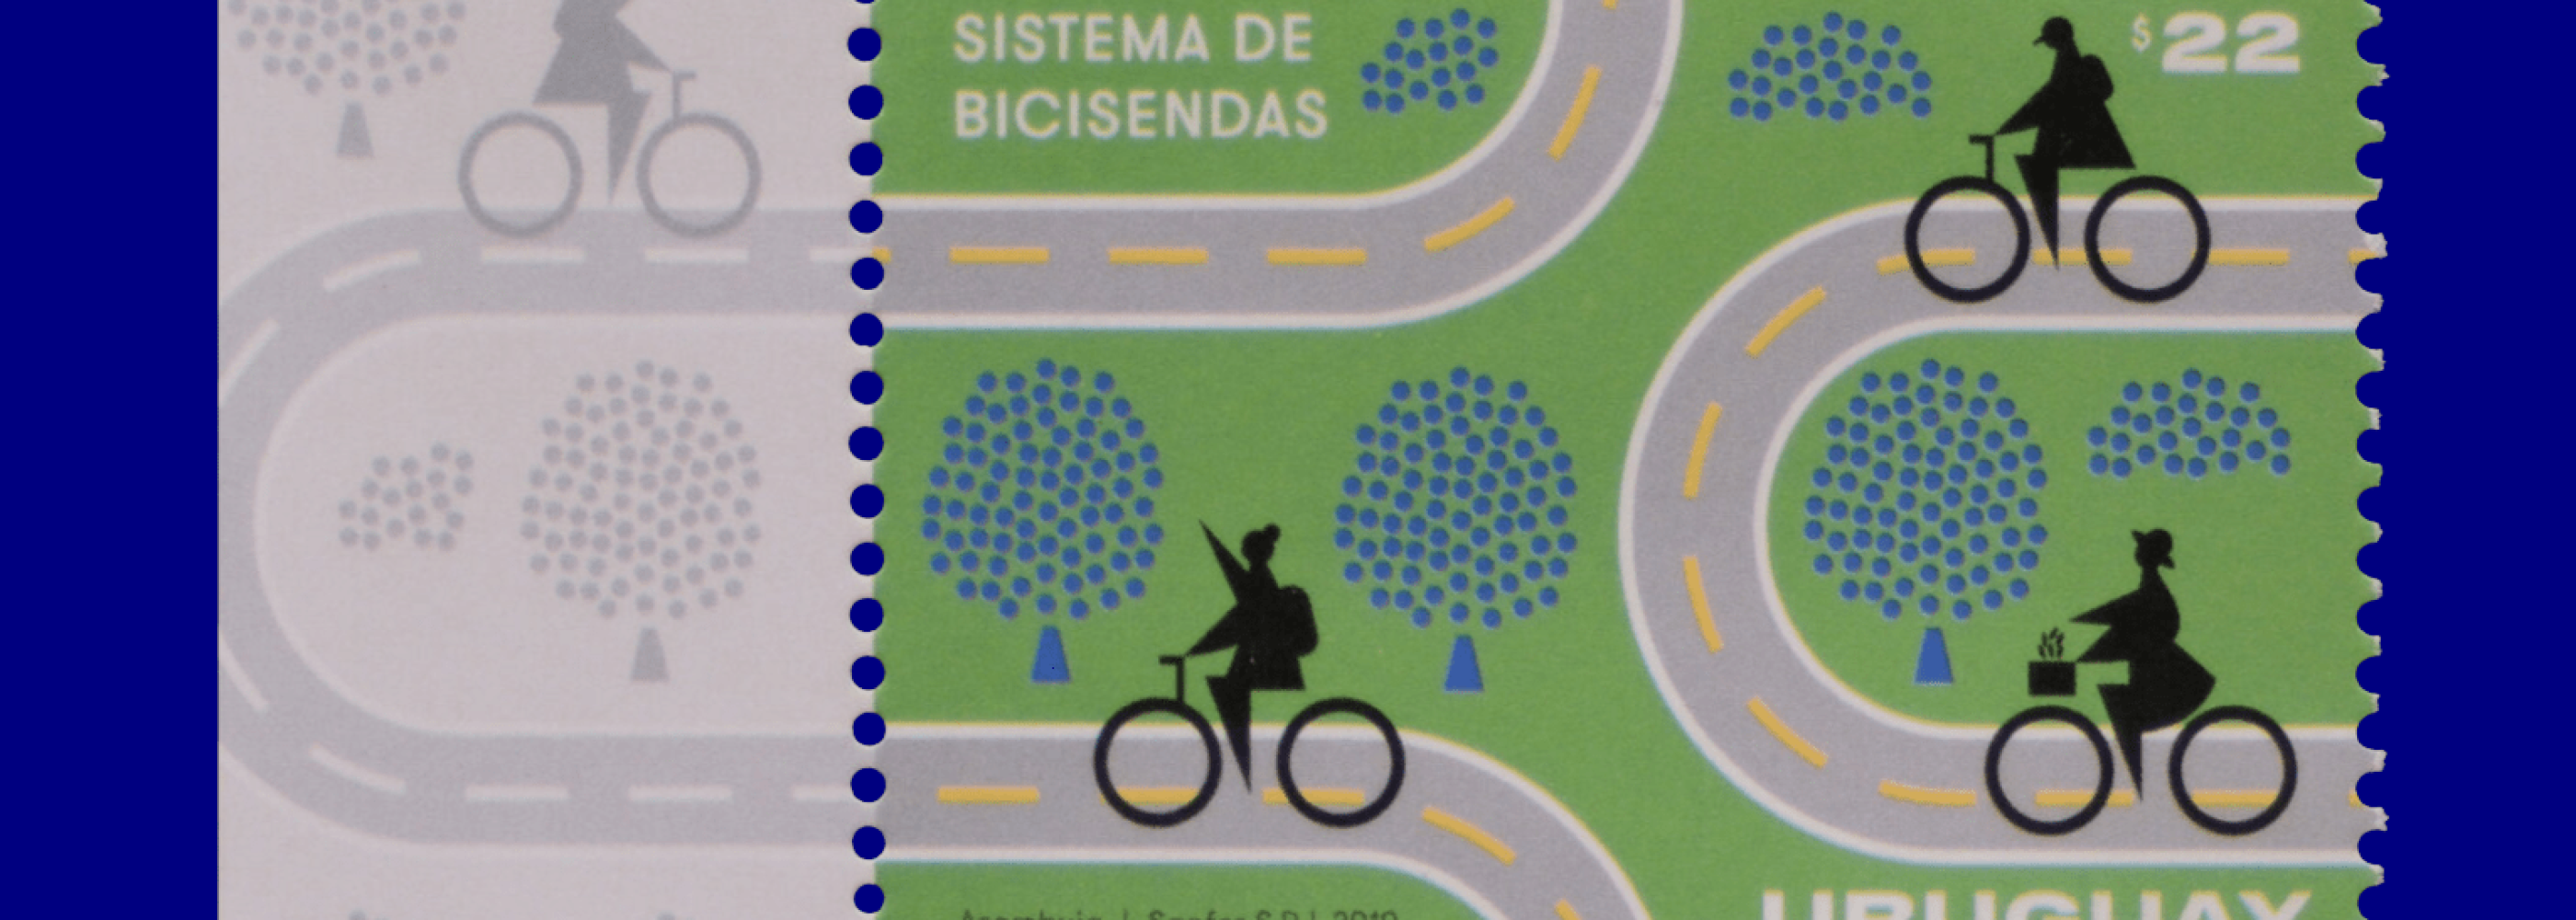 hilately · Bicycle Lane System · Martín Azambuja · 2019.